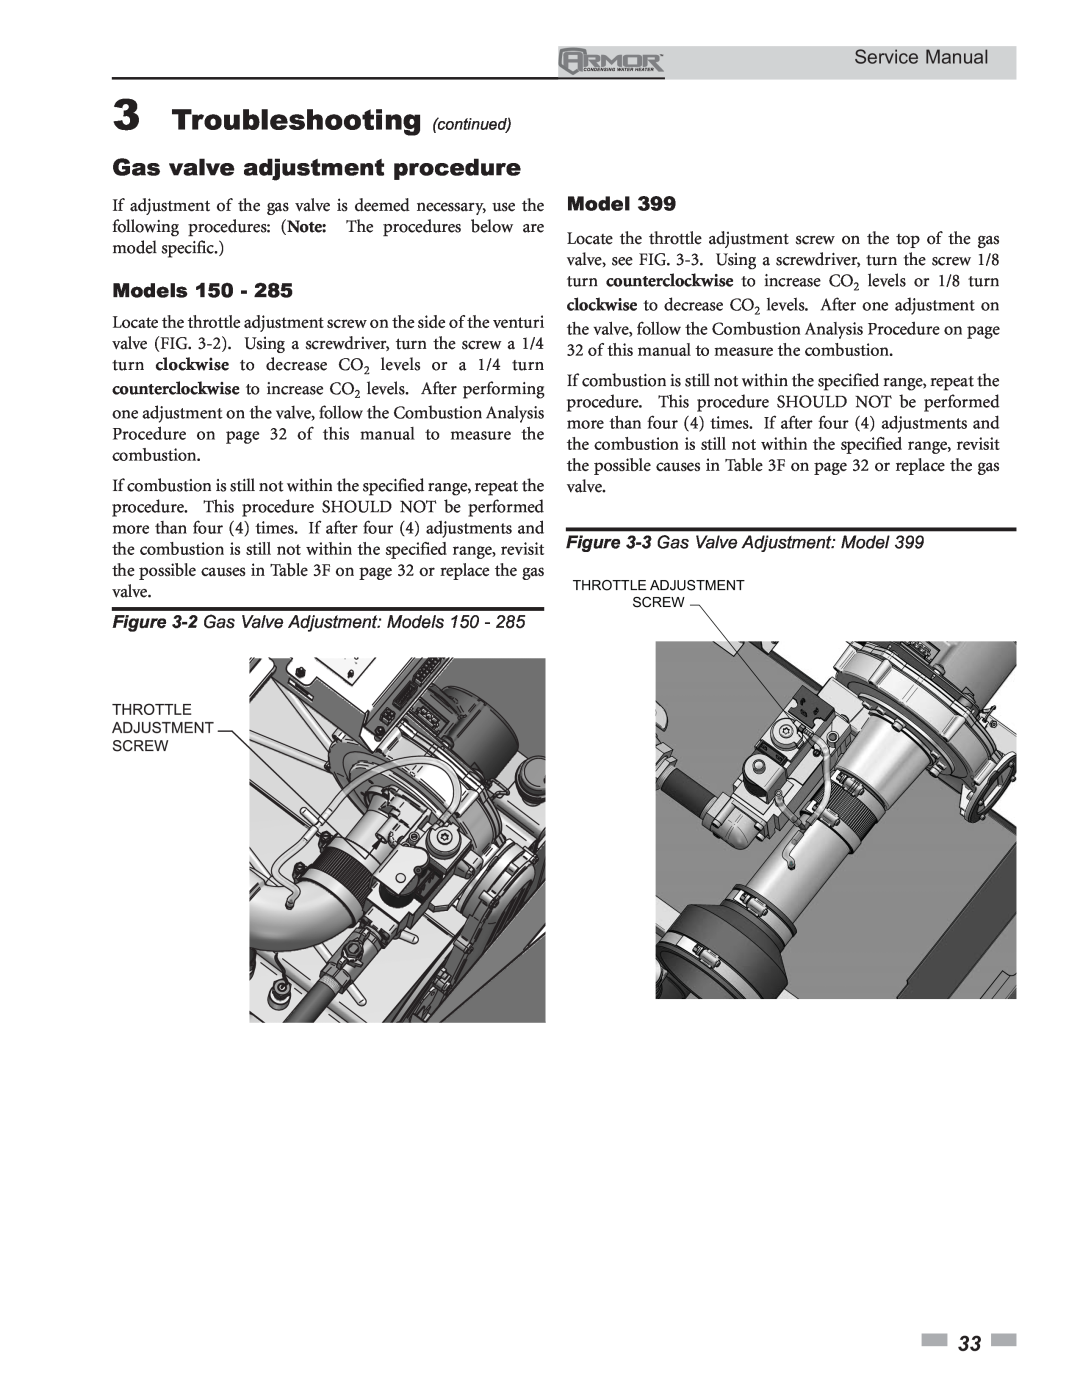 Lochinvar 150 - 800 Gas valve adjustment procedure, 3Troubleshooting continued, 2 Gas Valve Adjustment Models 